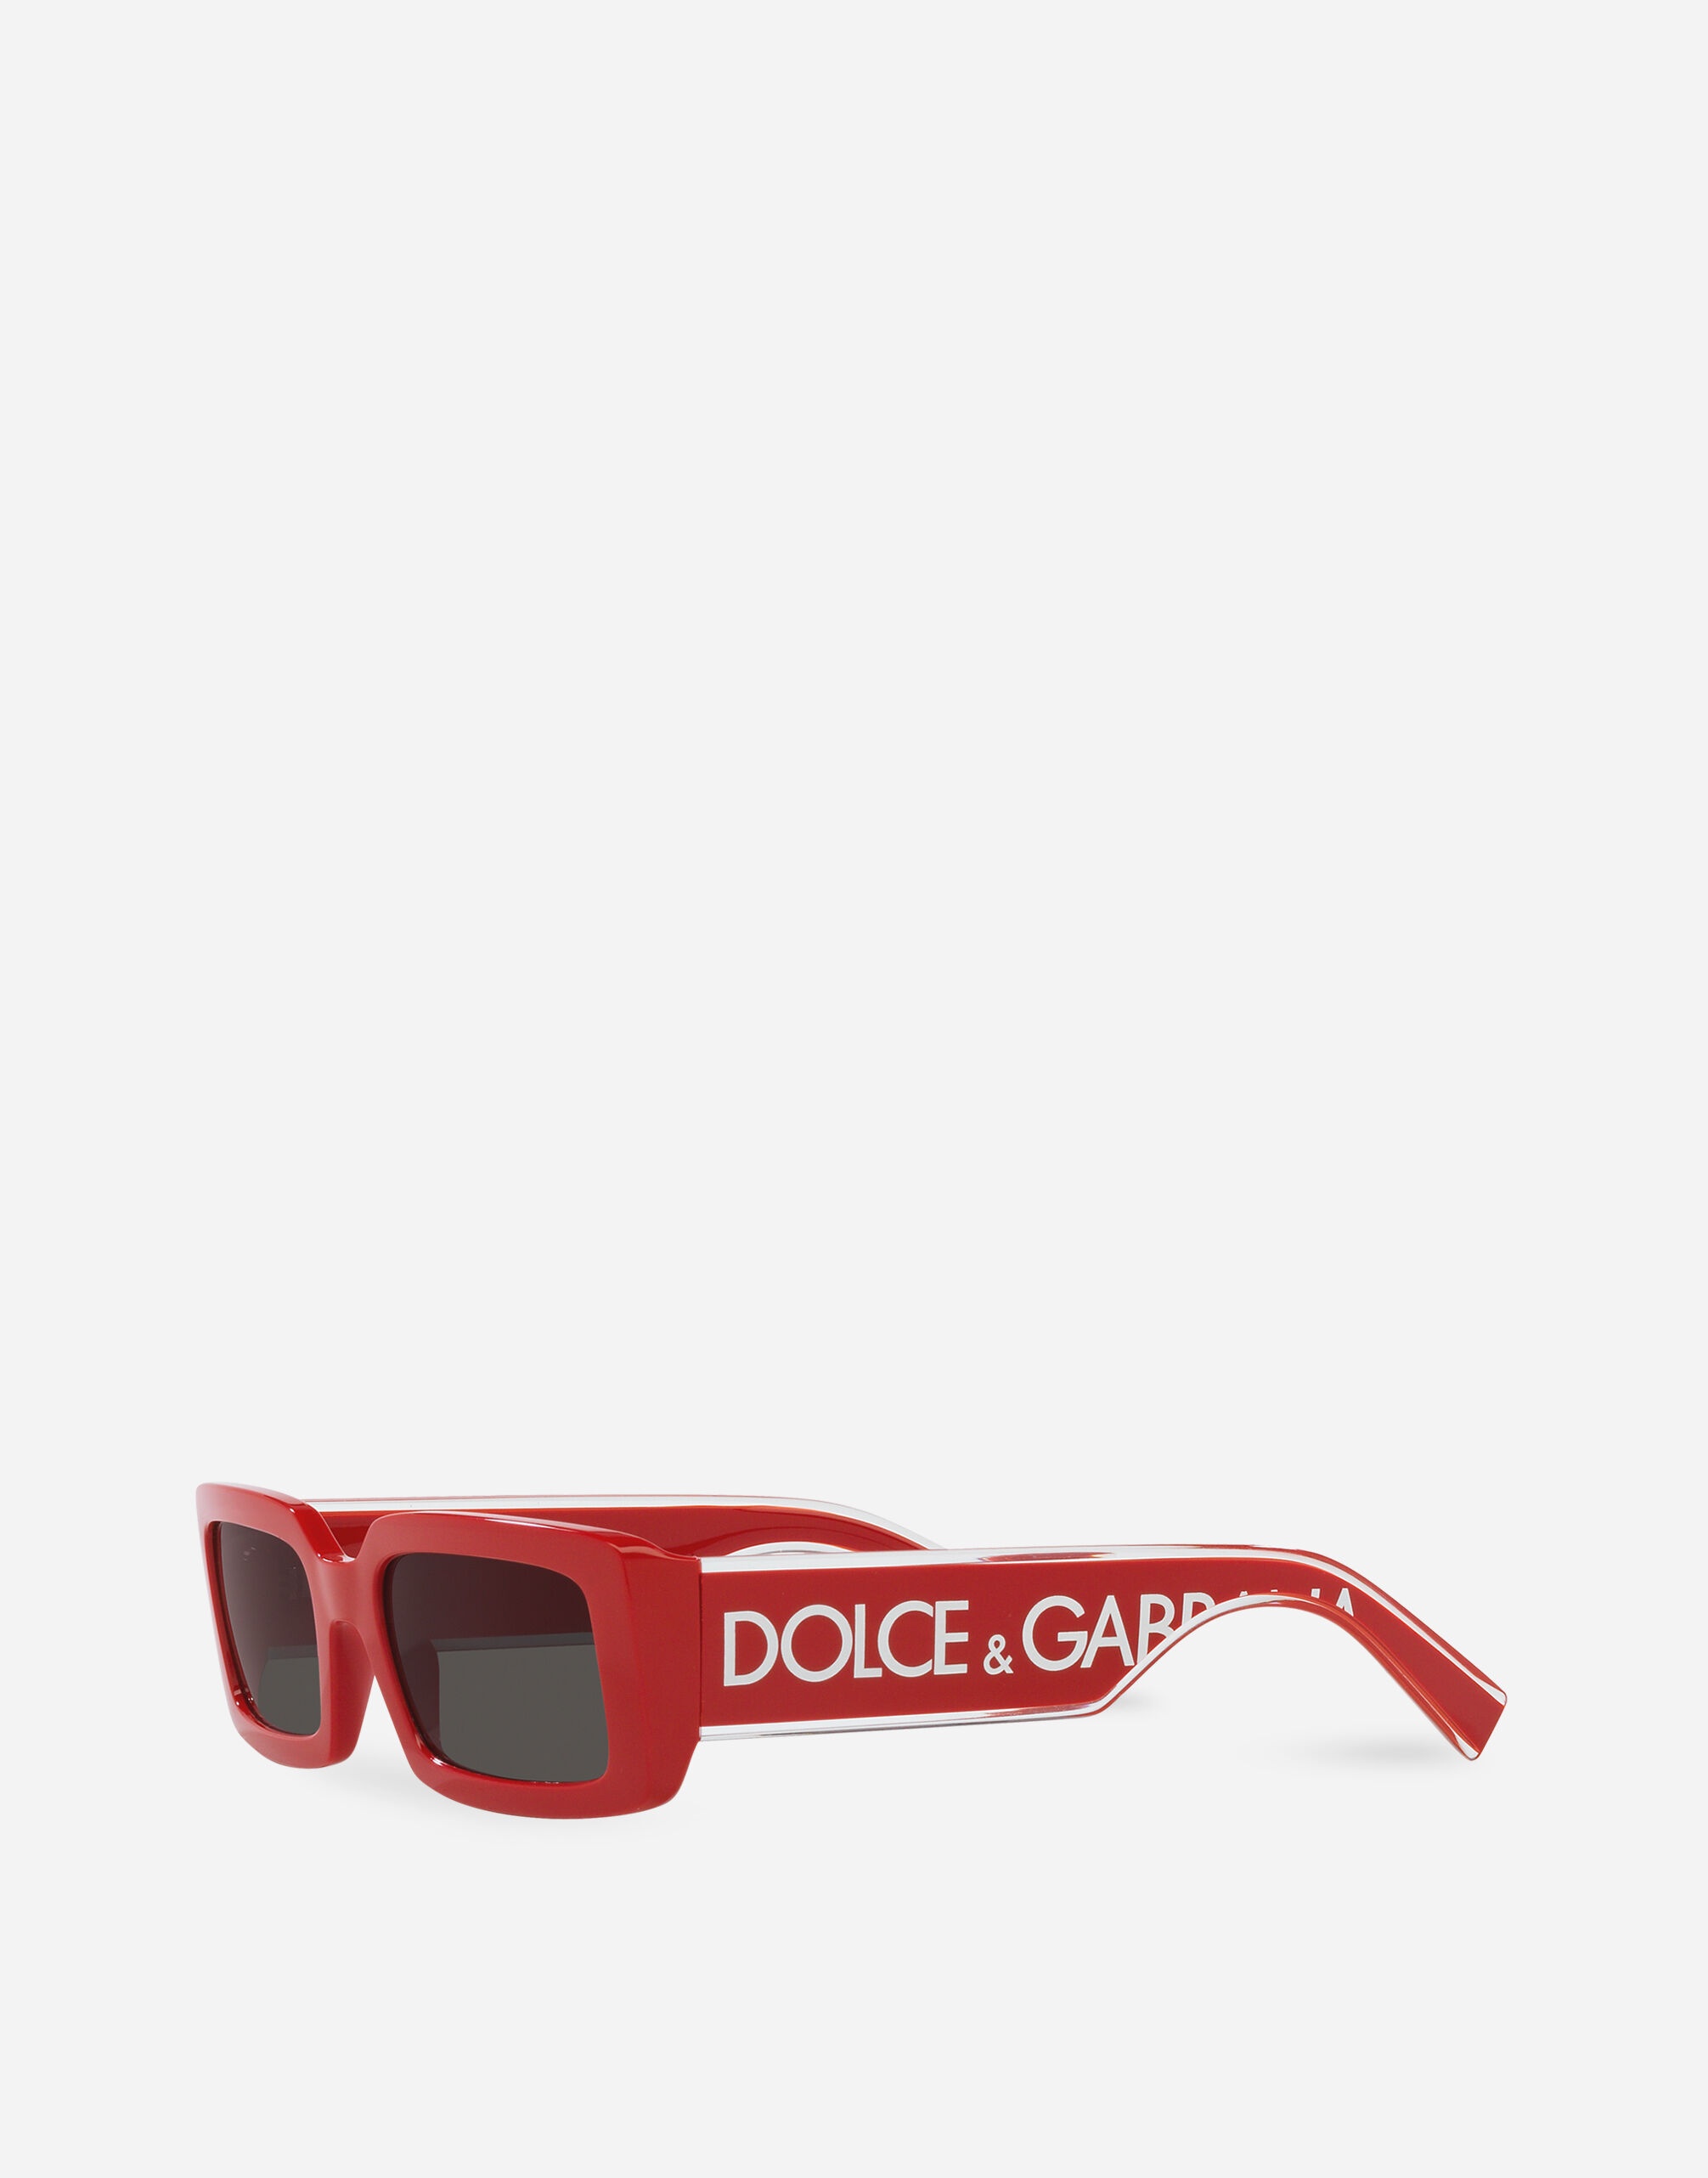 DG Elastic sunglasses - 2